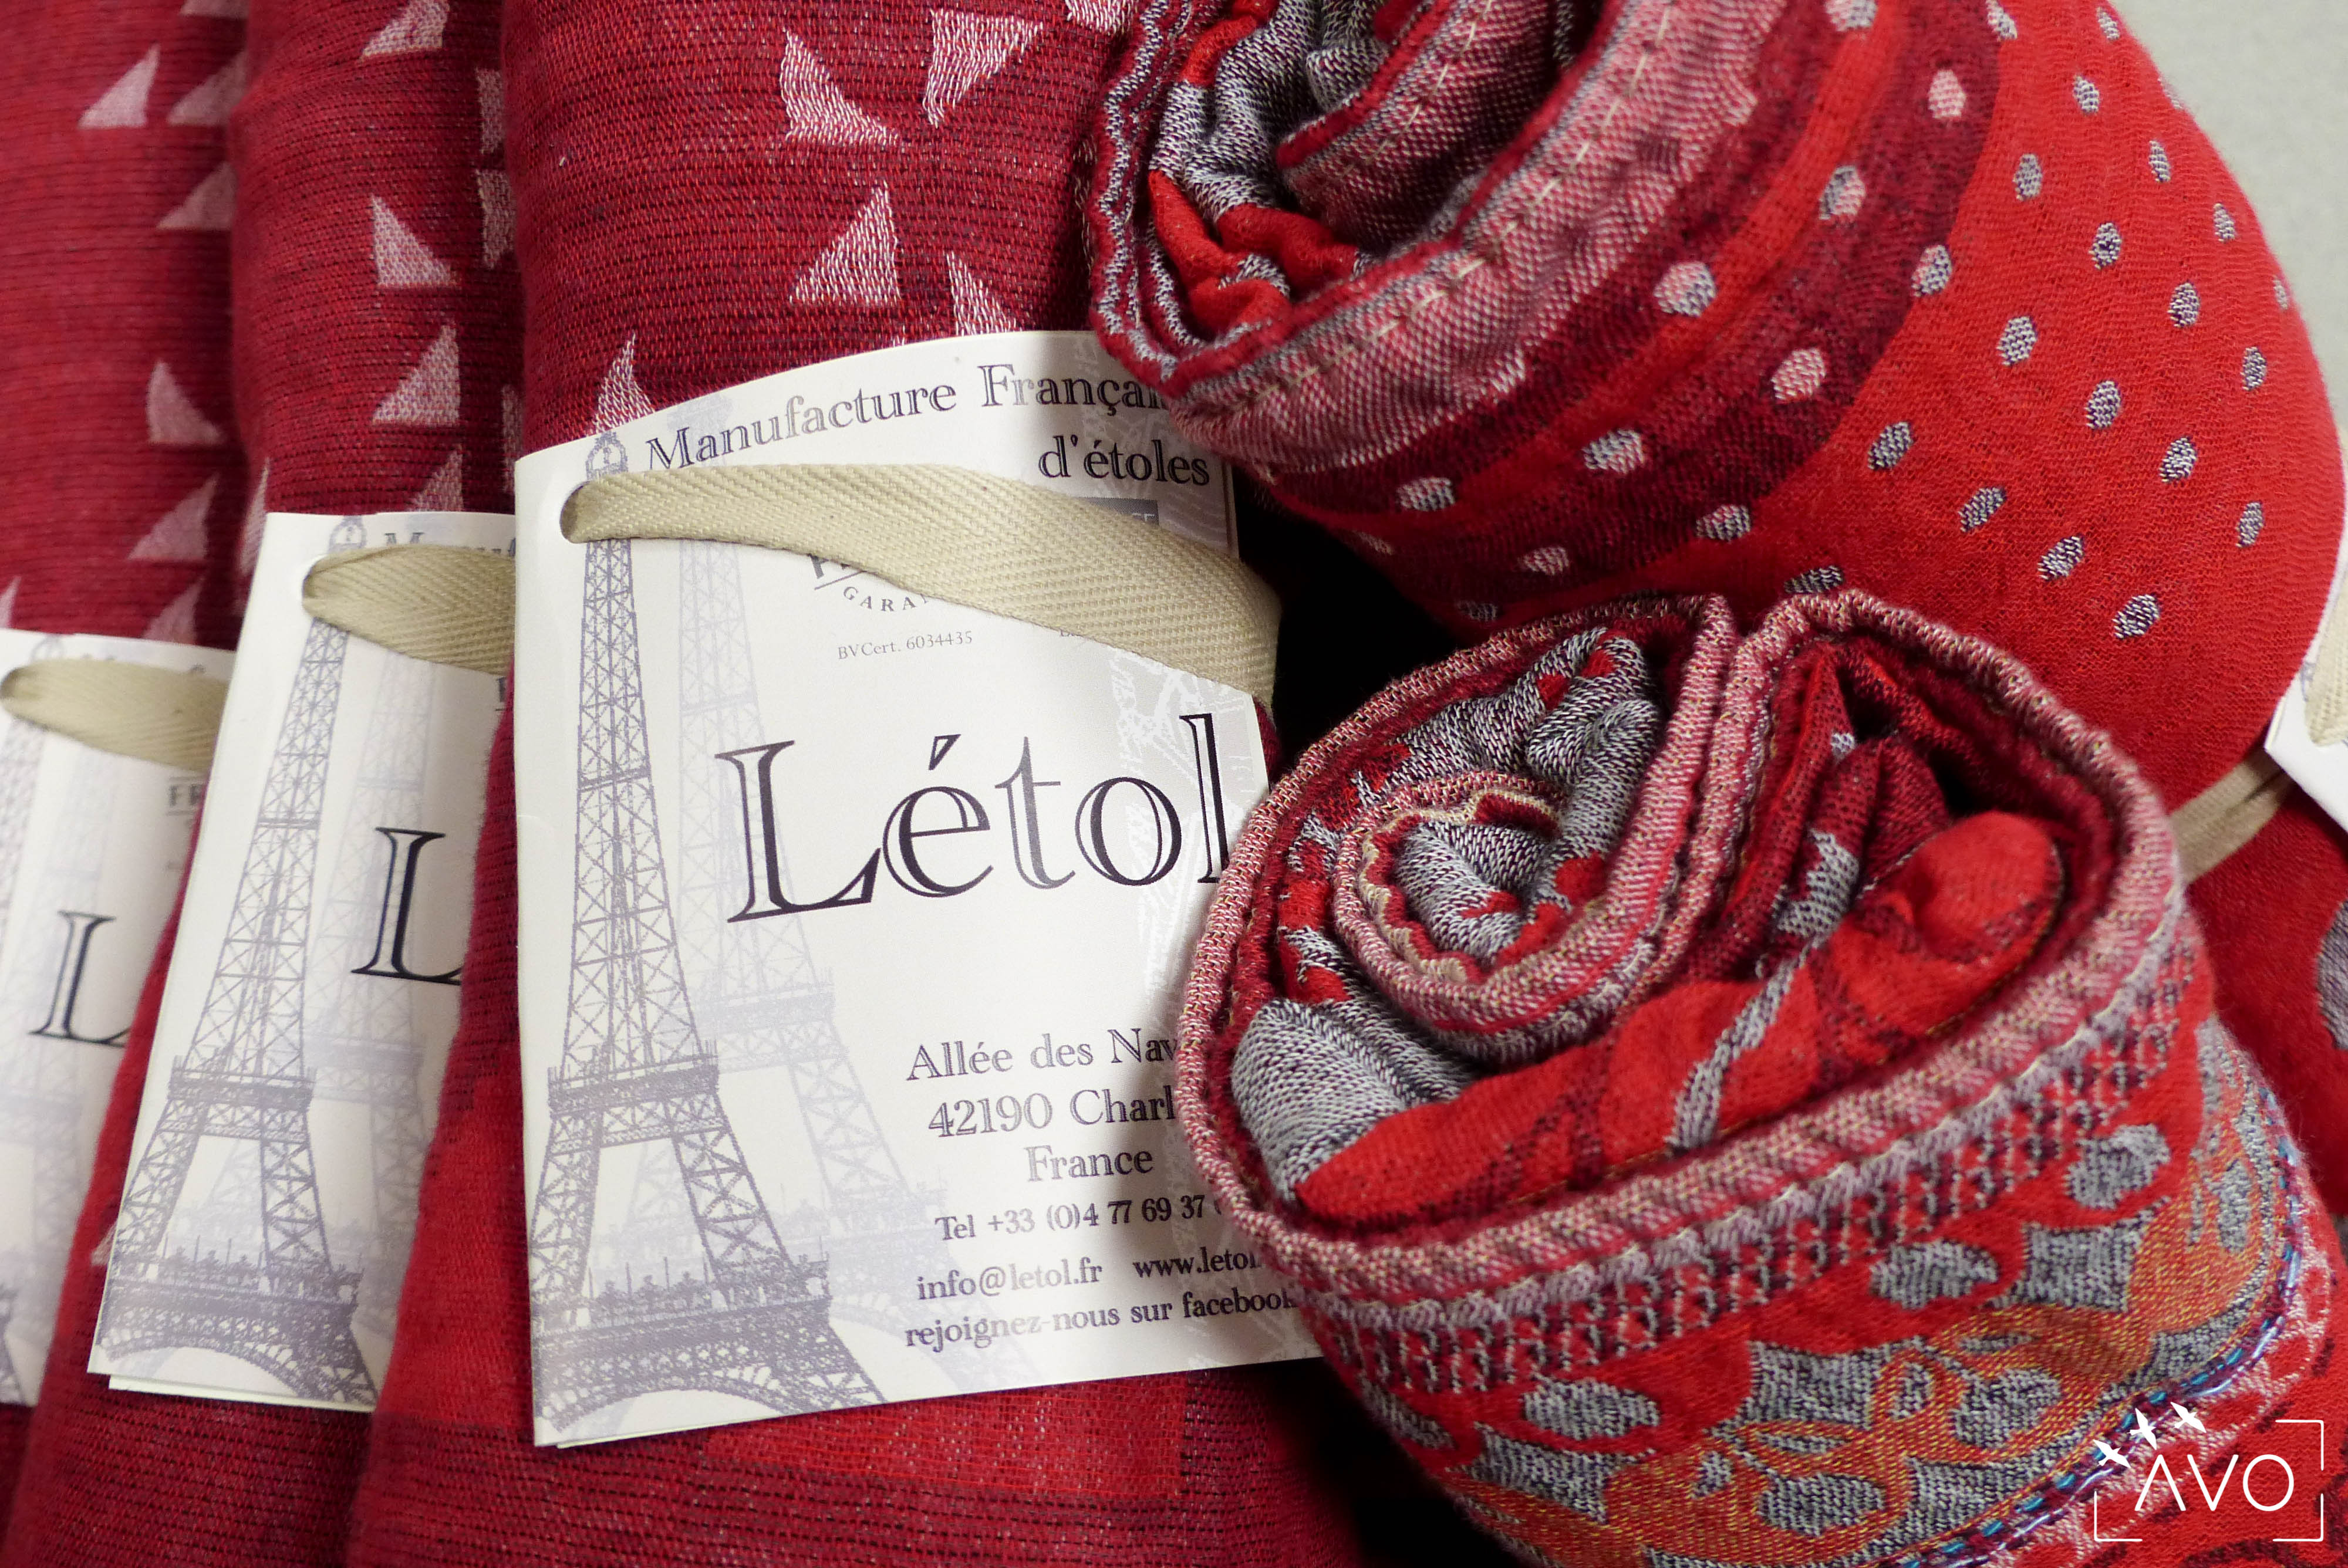 étole Létol foulard madeinfrance charlieu loire motif fleur géométrique beau dessin cadeau rouleaux rouge pois